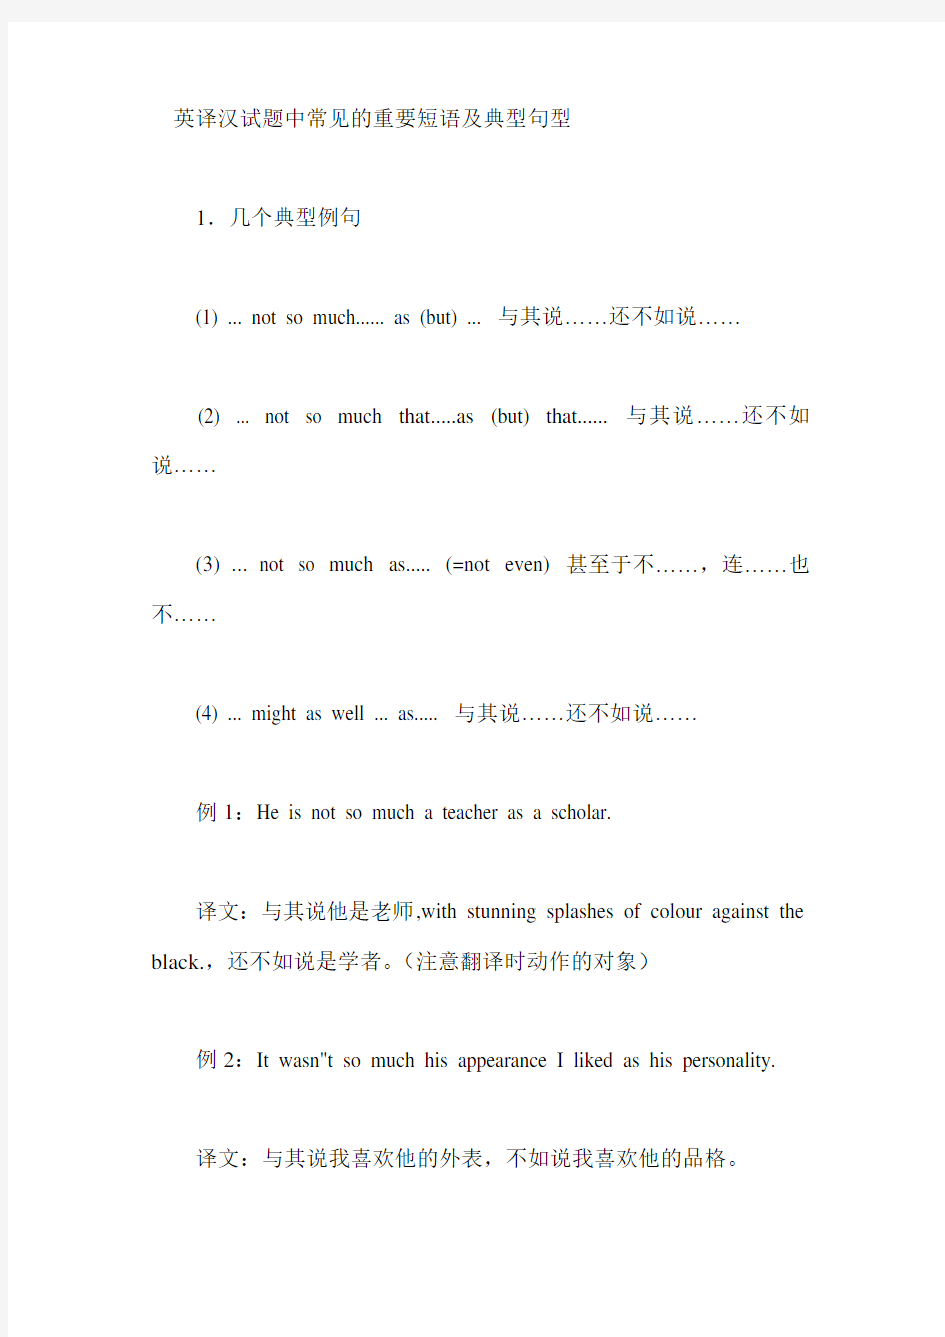 英译汉试题中常见的重要短语及典型句型